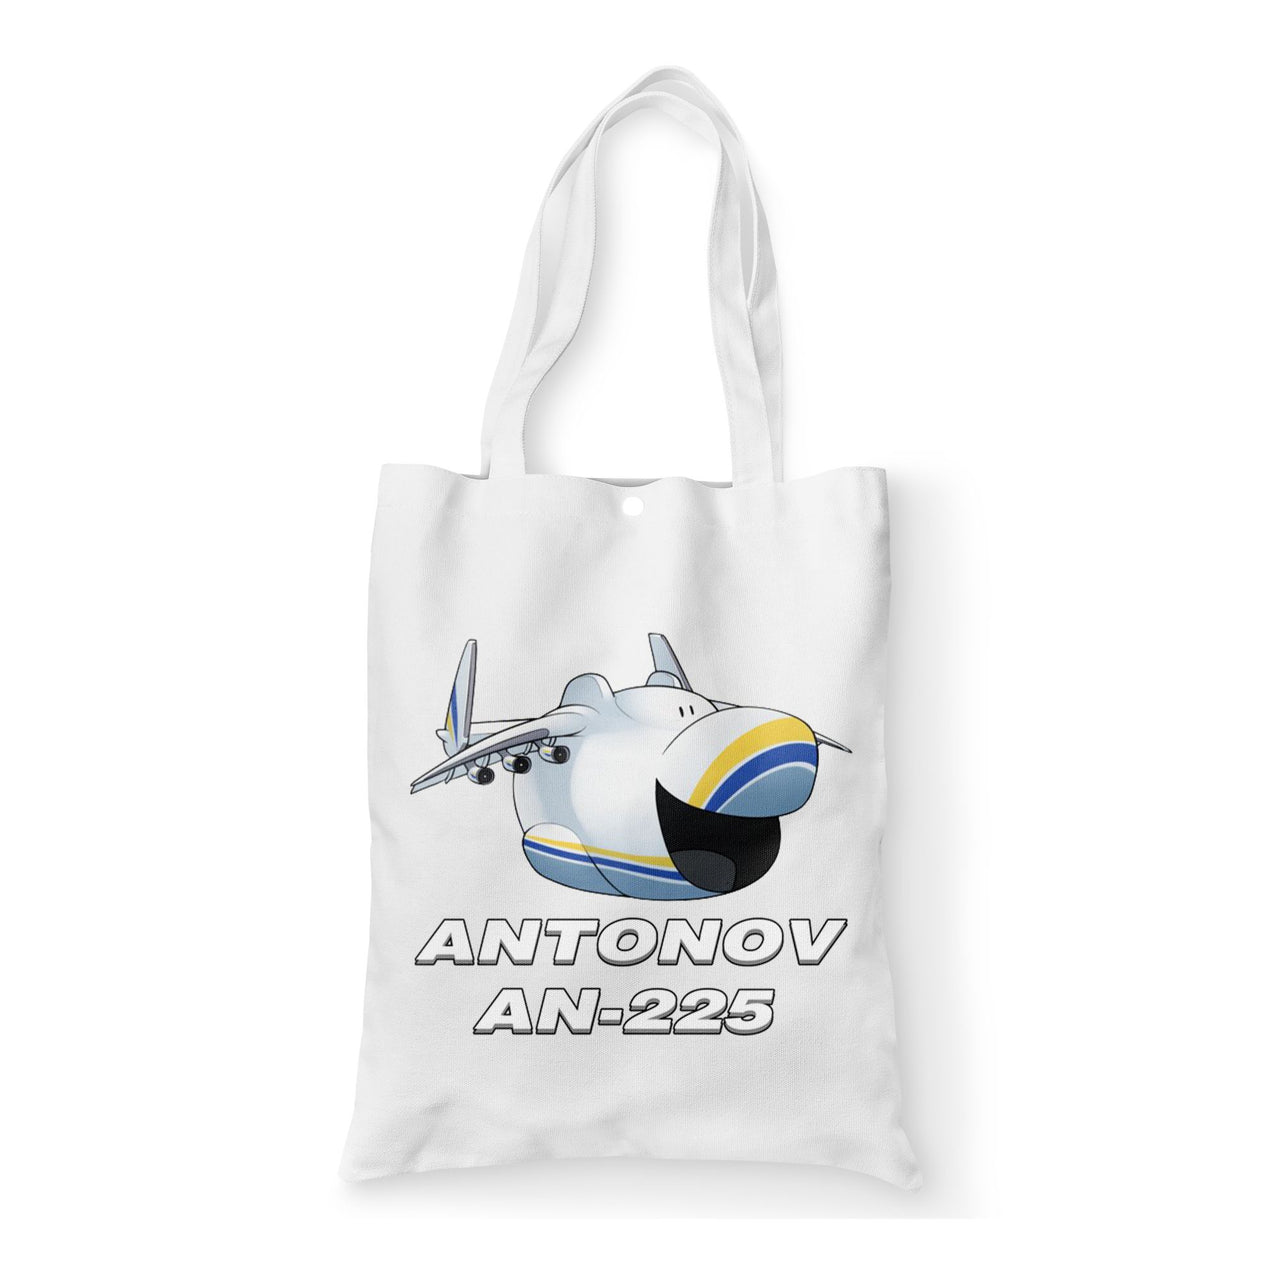 Antonov AN-225 (23) Designed Tote Bags